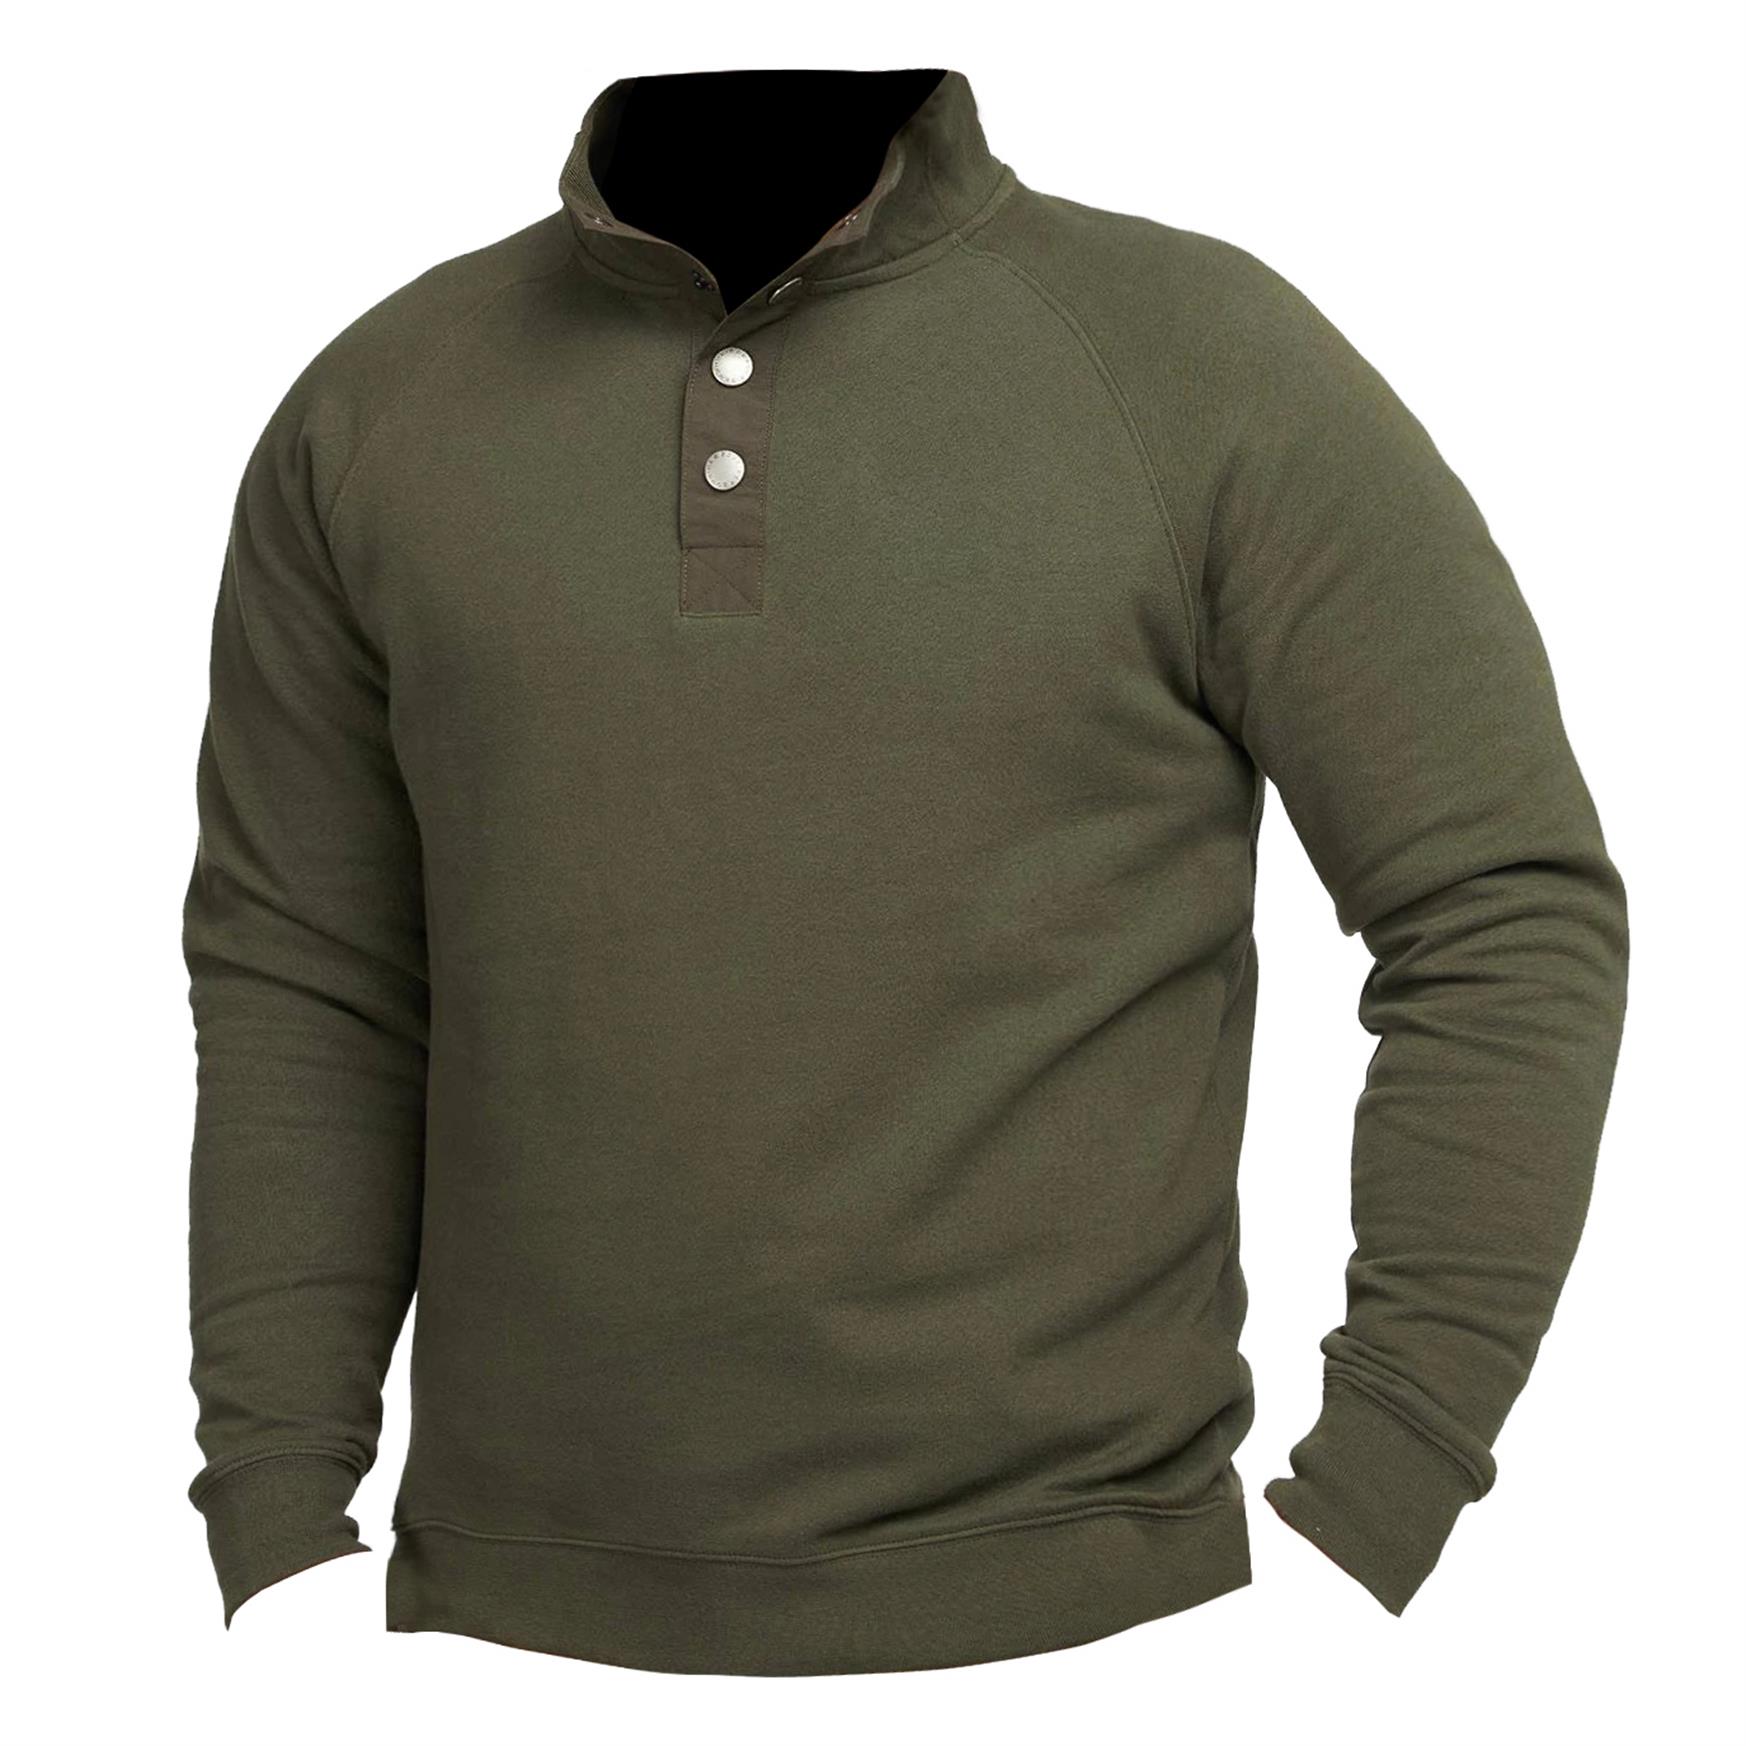 Men's Outdoor Tactical Quarter Chic Snap Sweatshirt